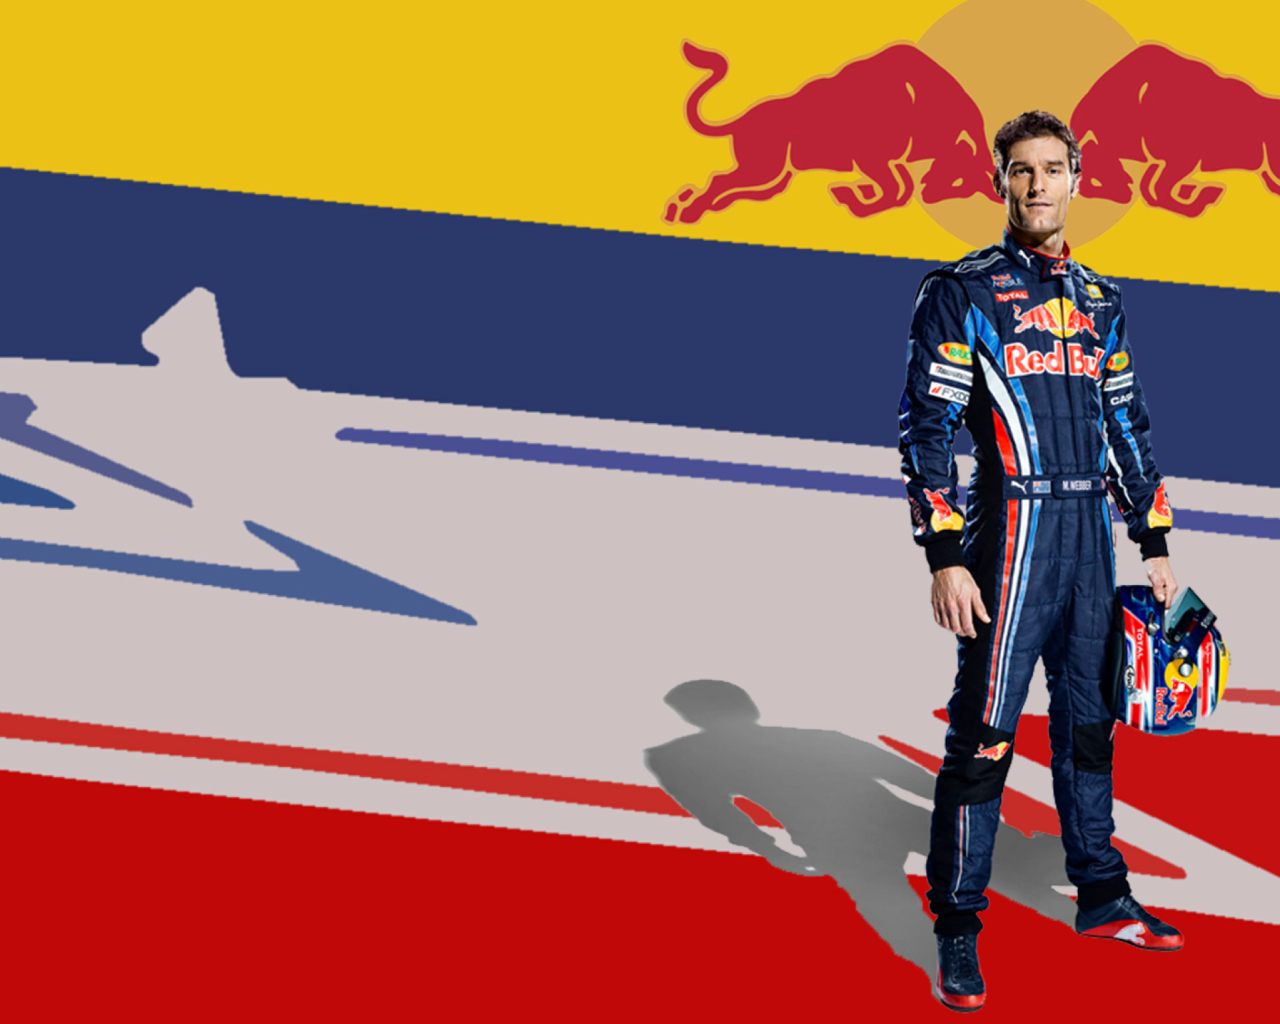 Red Bull Racing wallpaper 1280x1024